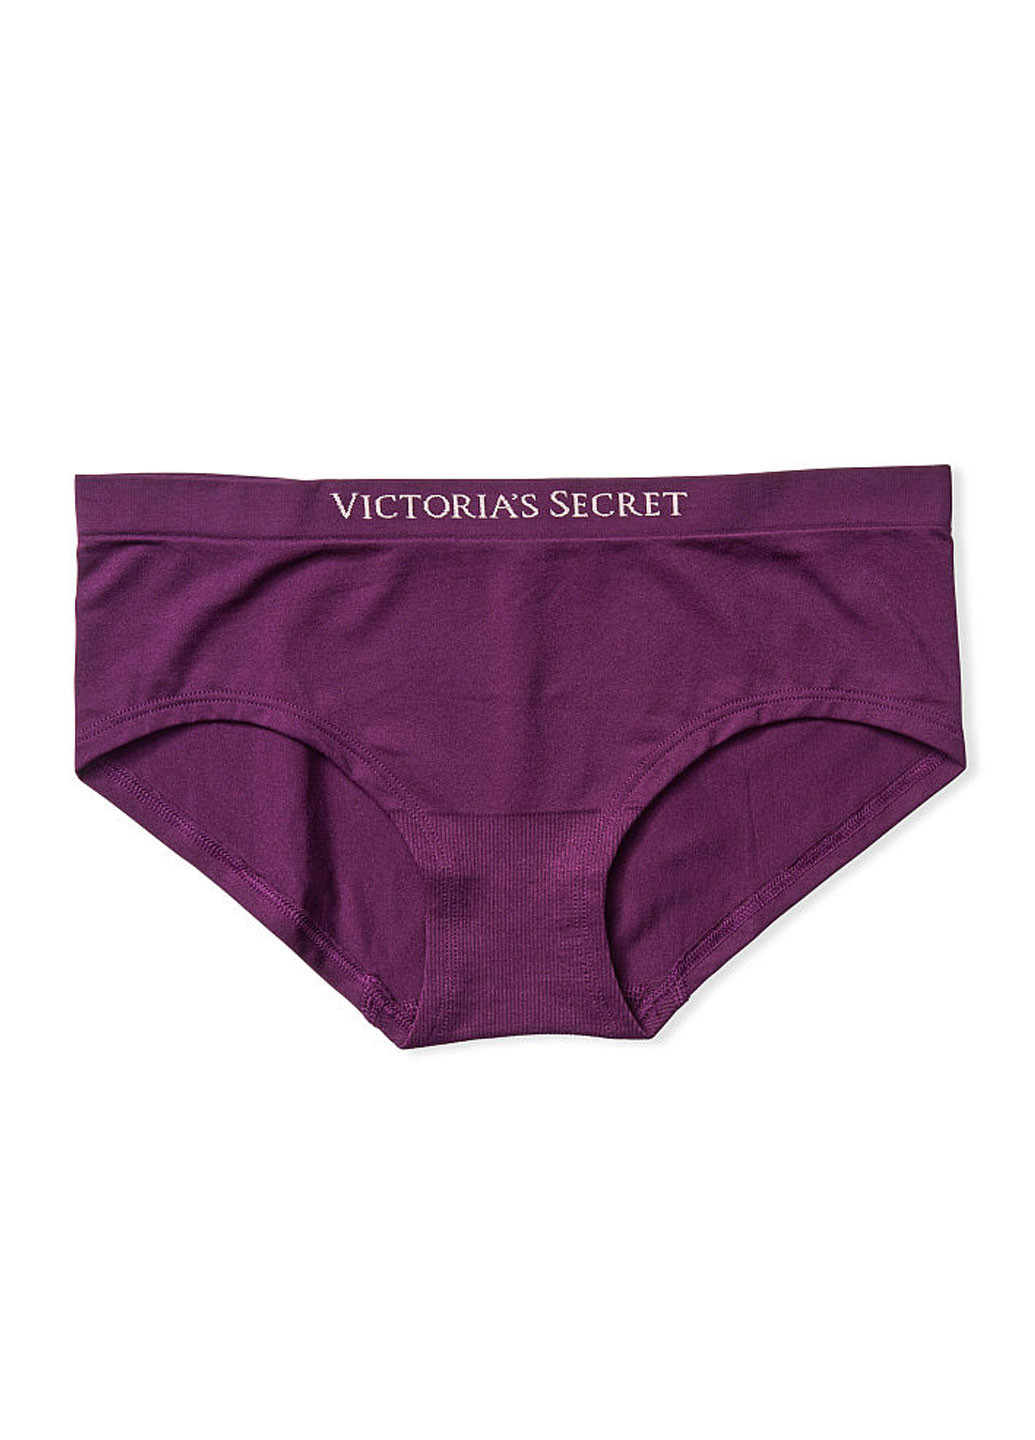 Трусики Victoria's Secret слип логотипы фиолетовые повседневные полиамид